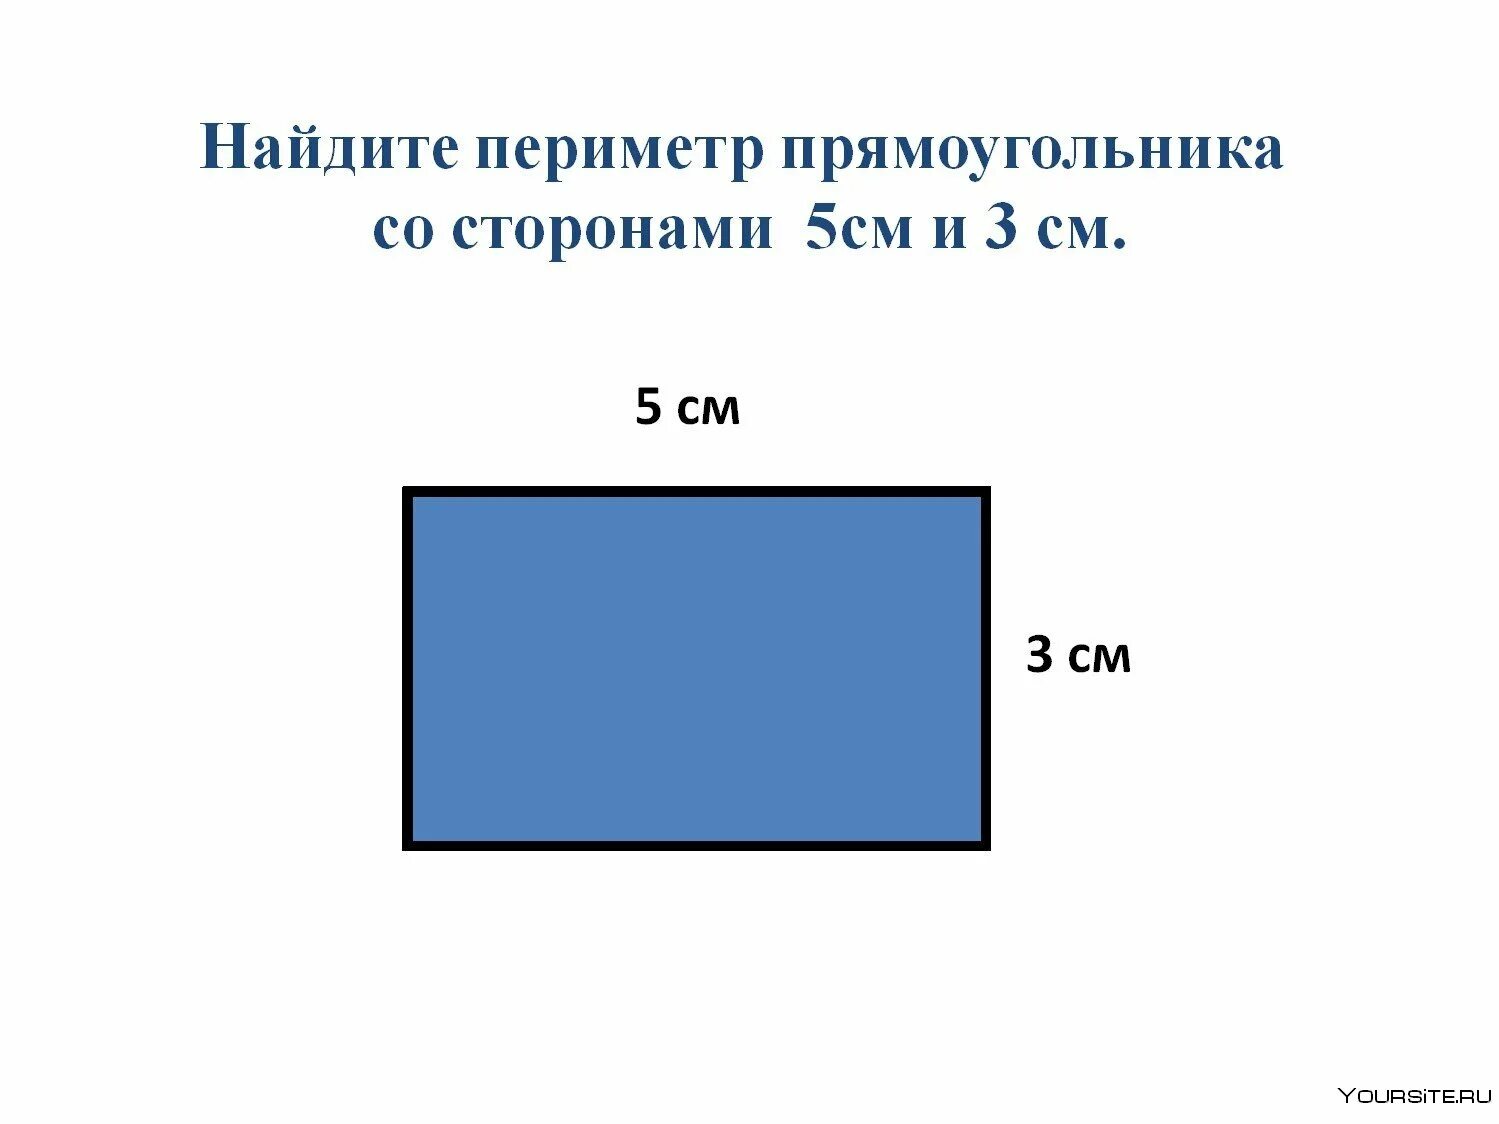 Периметр 50 см. Стороны прямоугольника. Сторона прямоугольника периметр. Изображение прямоугольника. Прямоугольник со сторонами 6 см и 2 см.